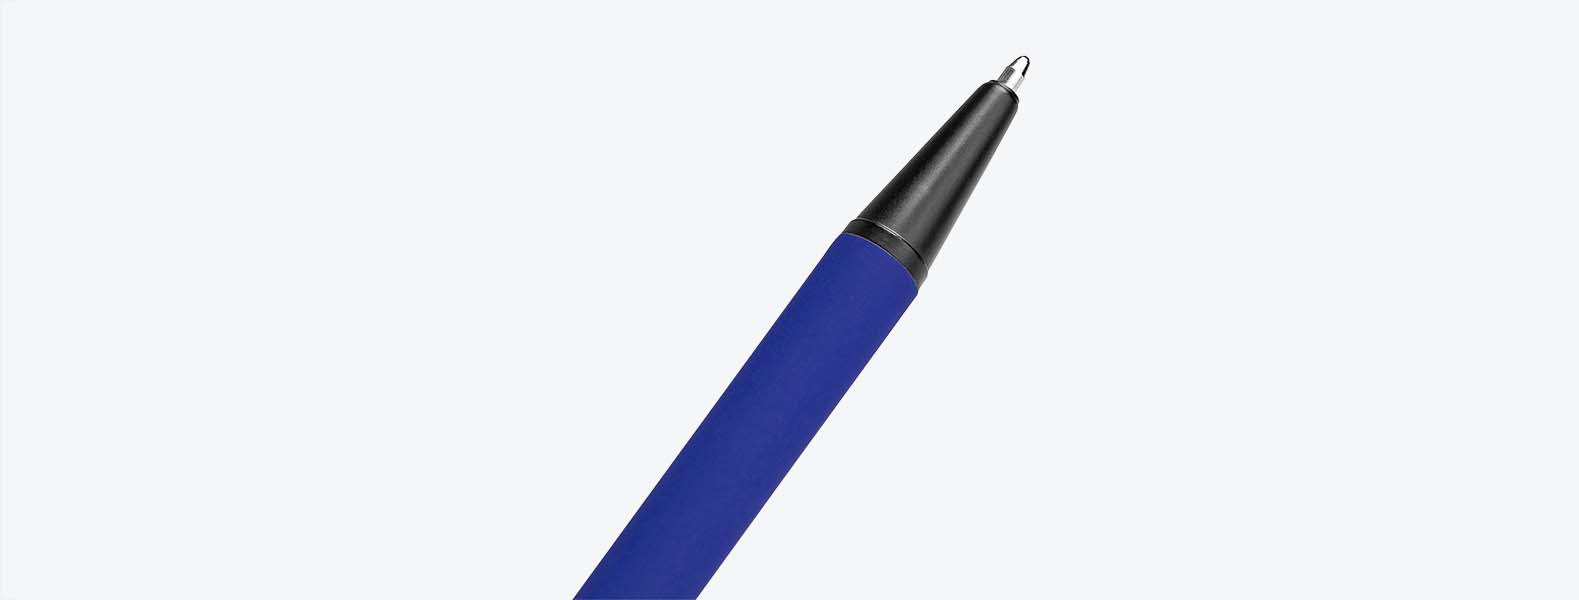 Caneta esferográfica em Alumínio com ponta touch. Conta com acabamento emborrachado azul; carga esferográfica azul, acionada com um click.